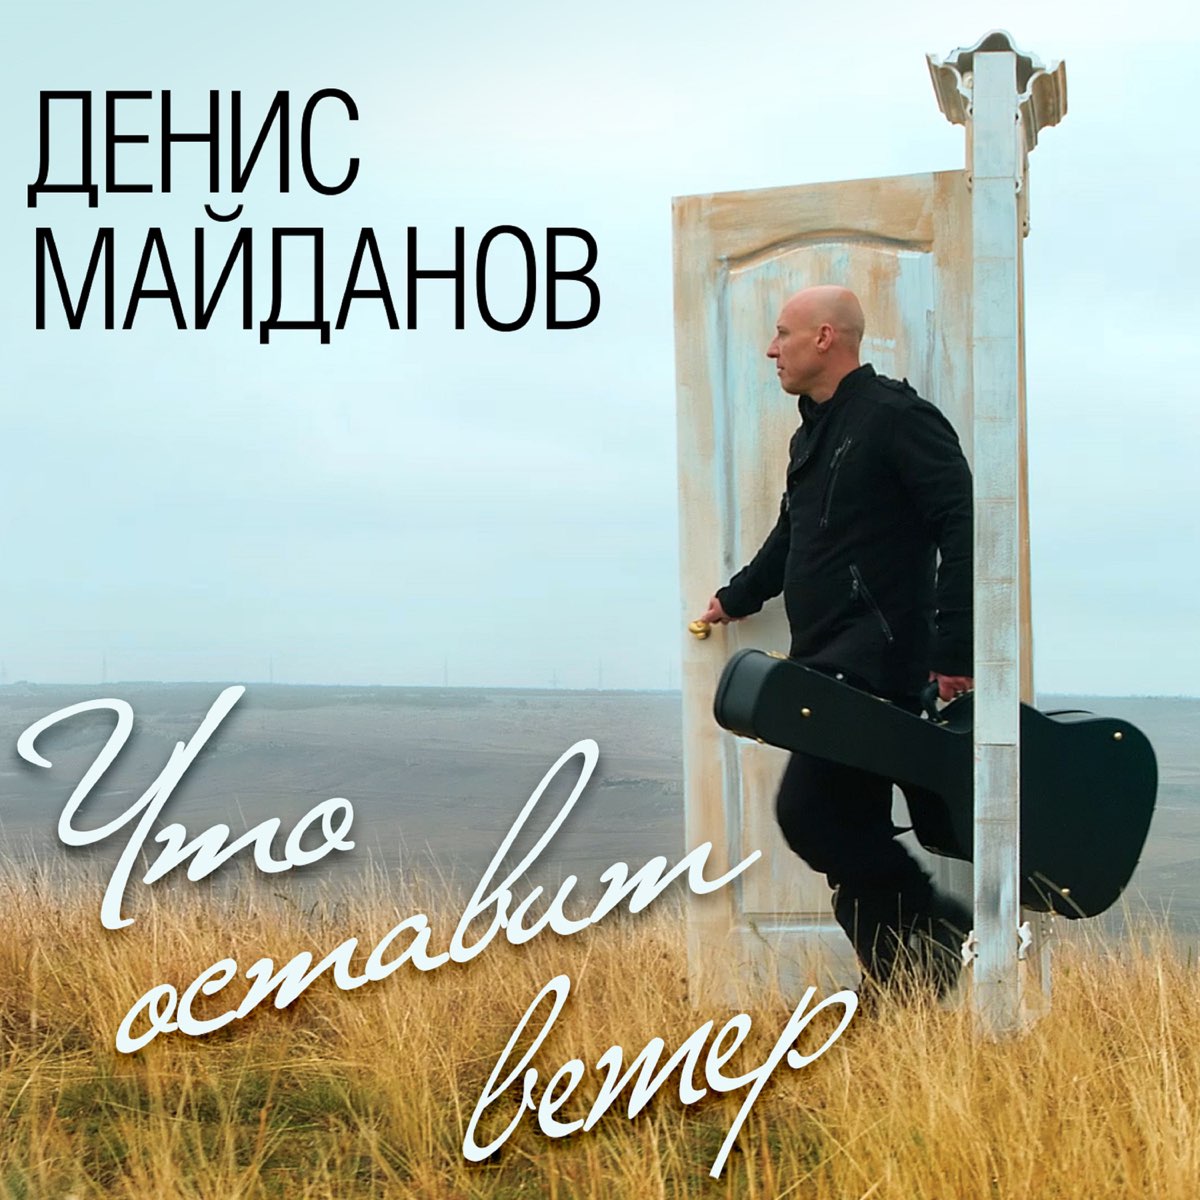 Майданов жить песня